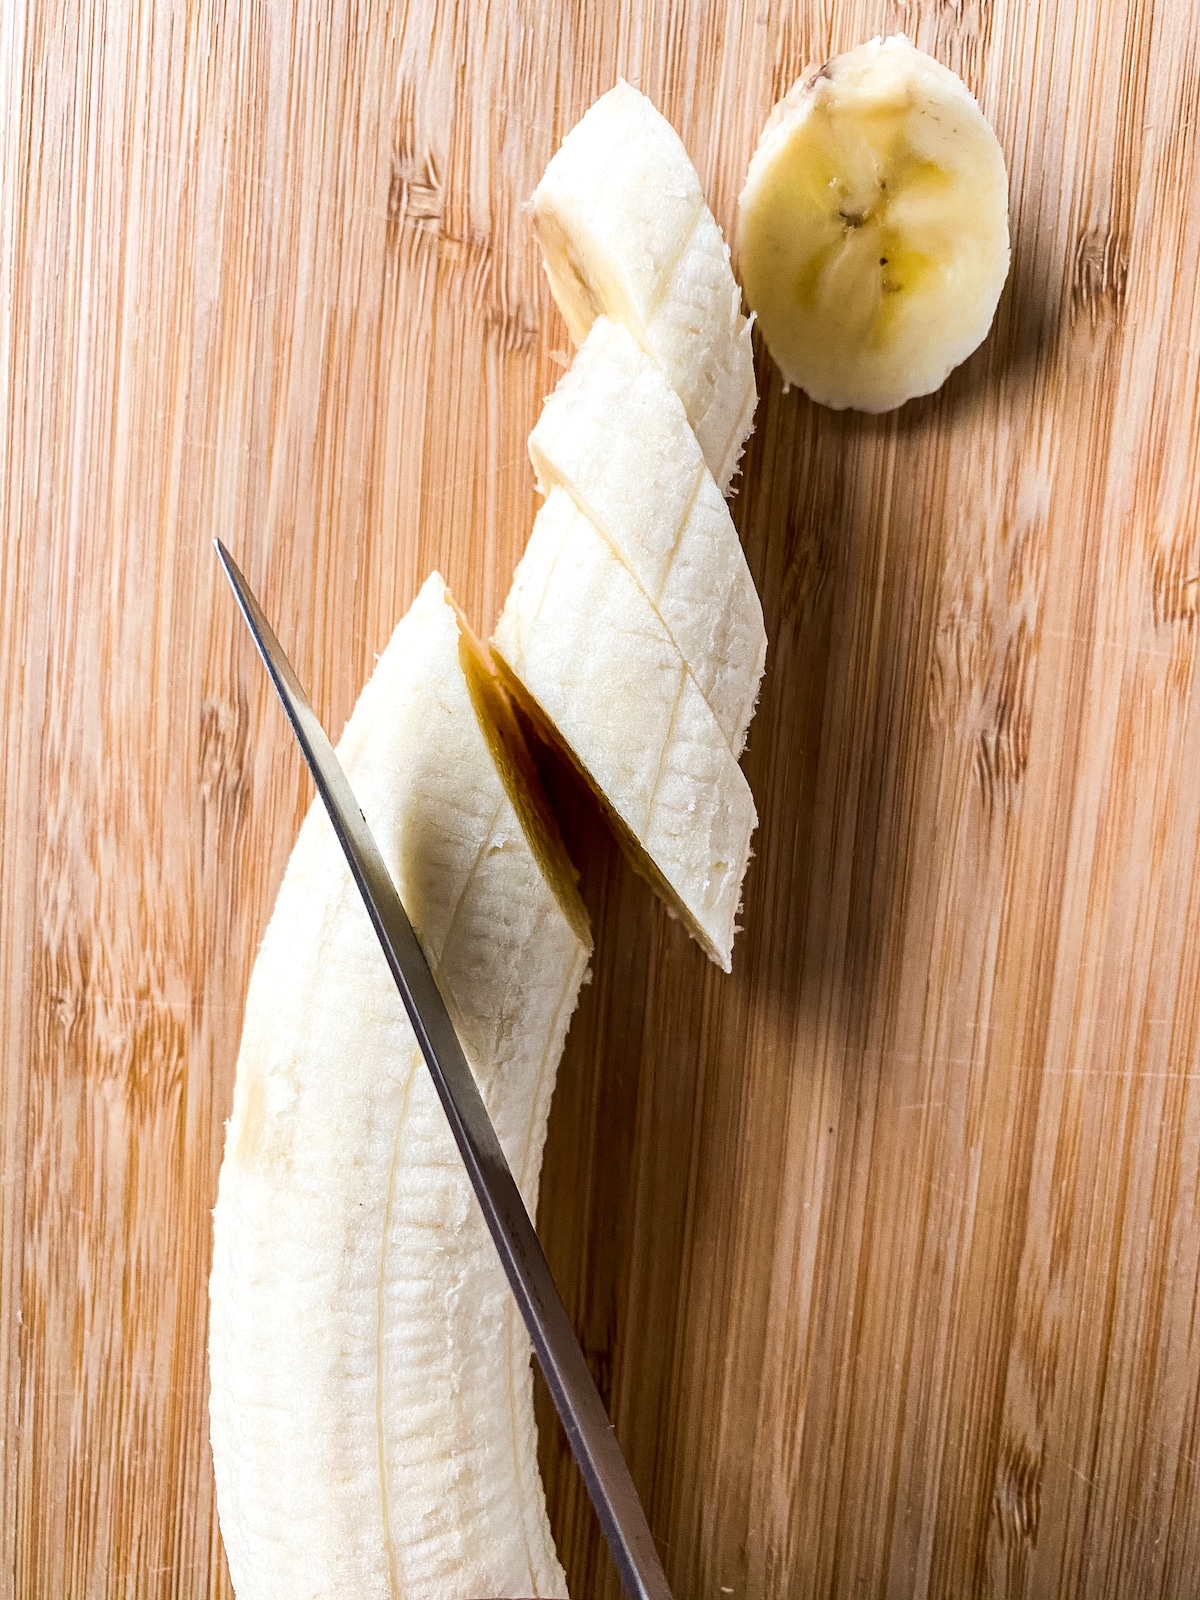 Slicing bananas